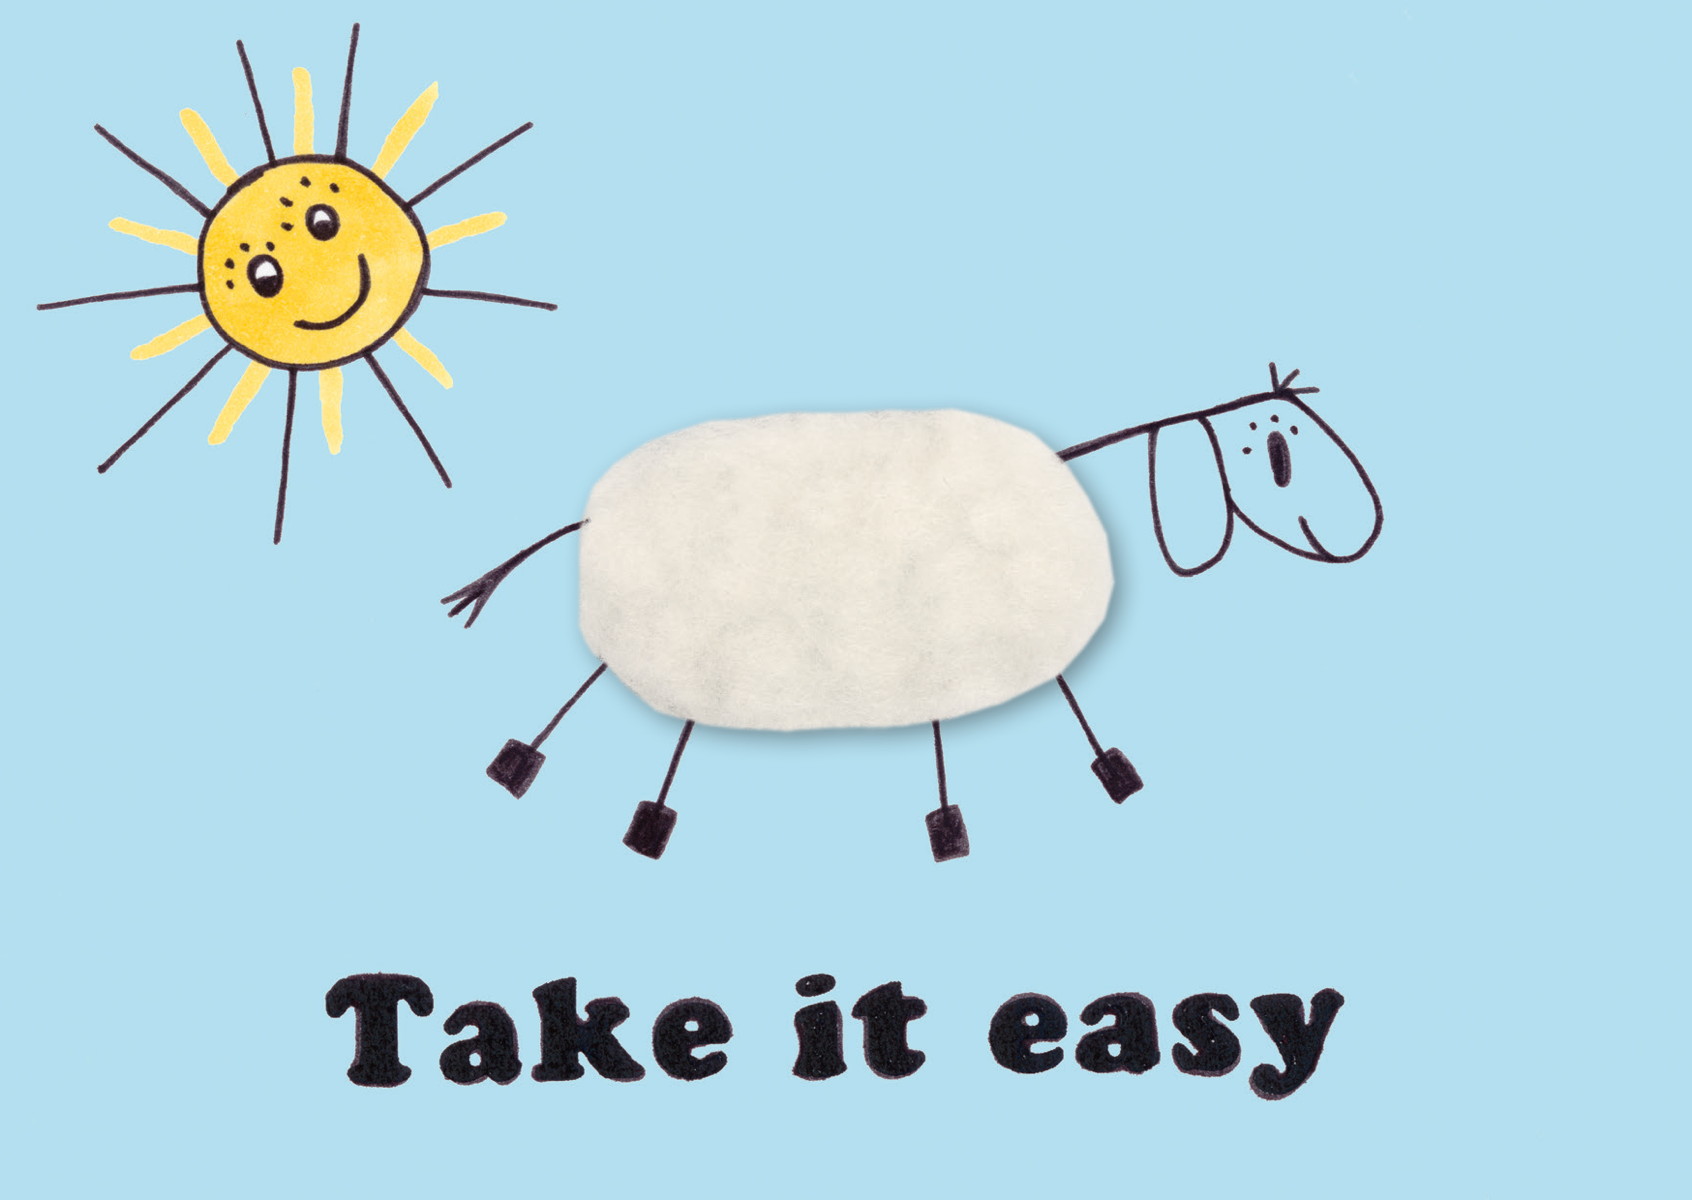 Plush card "Take it easy"